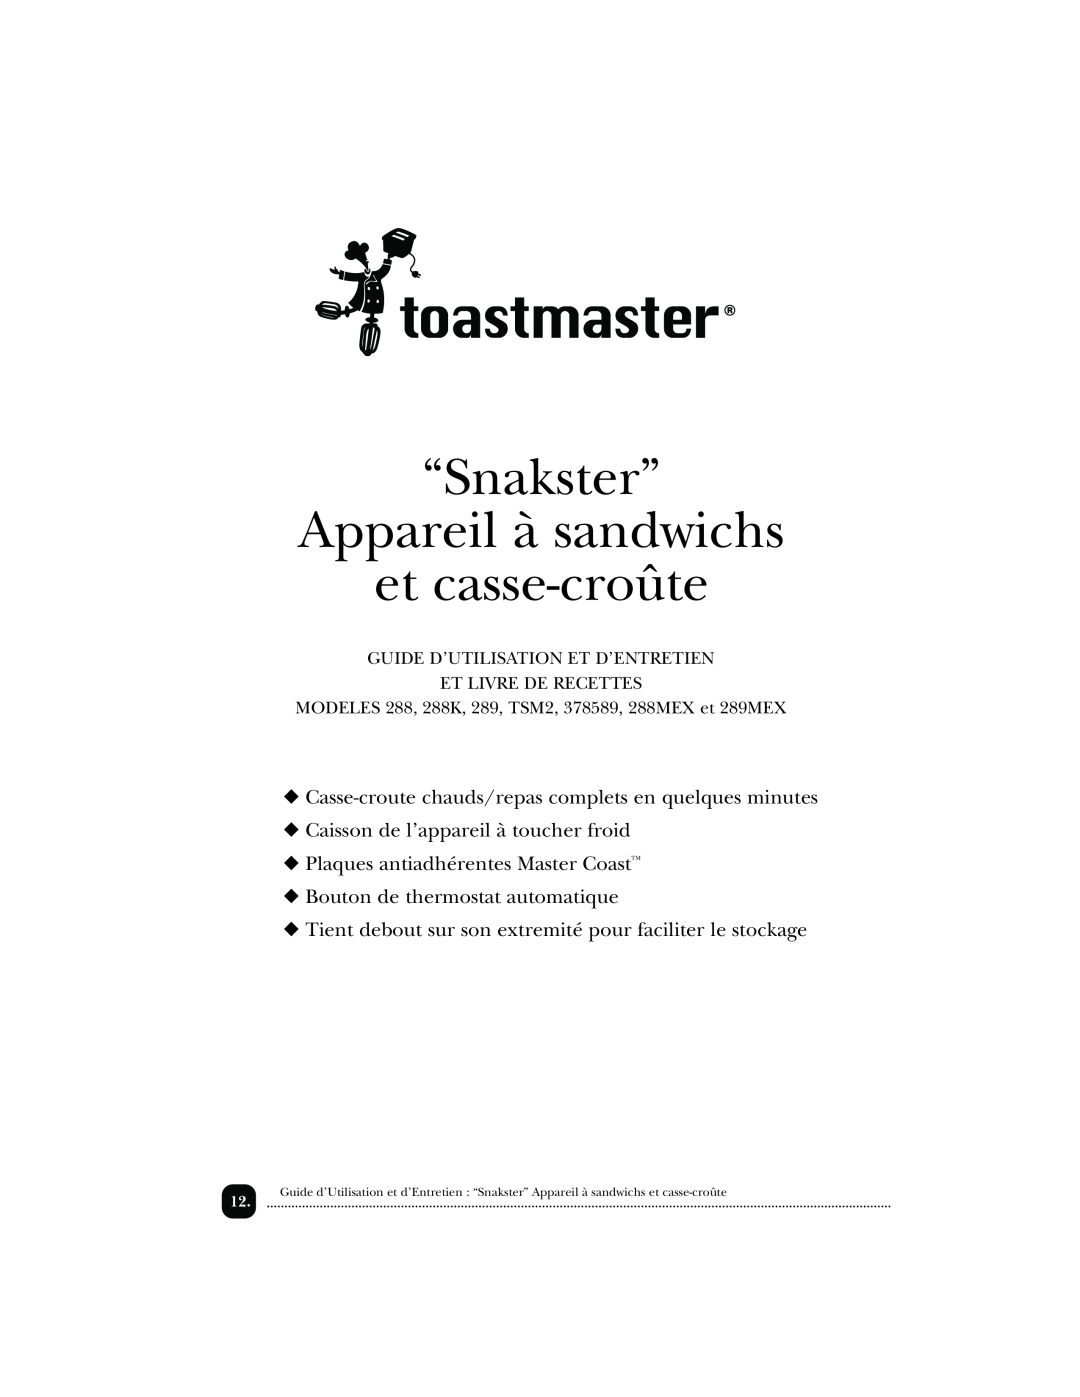 Toastmaster 288MEX, TSM2, 289MEX, 288K, 378589 manual “Snakster” Appareil à sandwichs et casse-croûte 